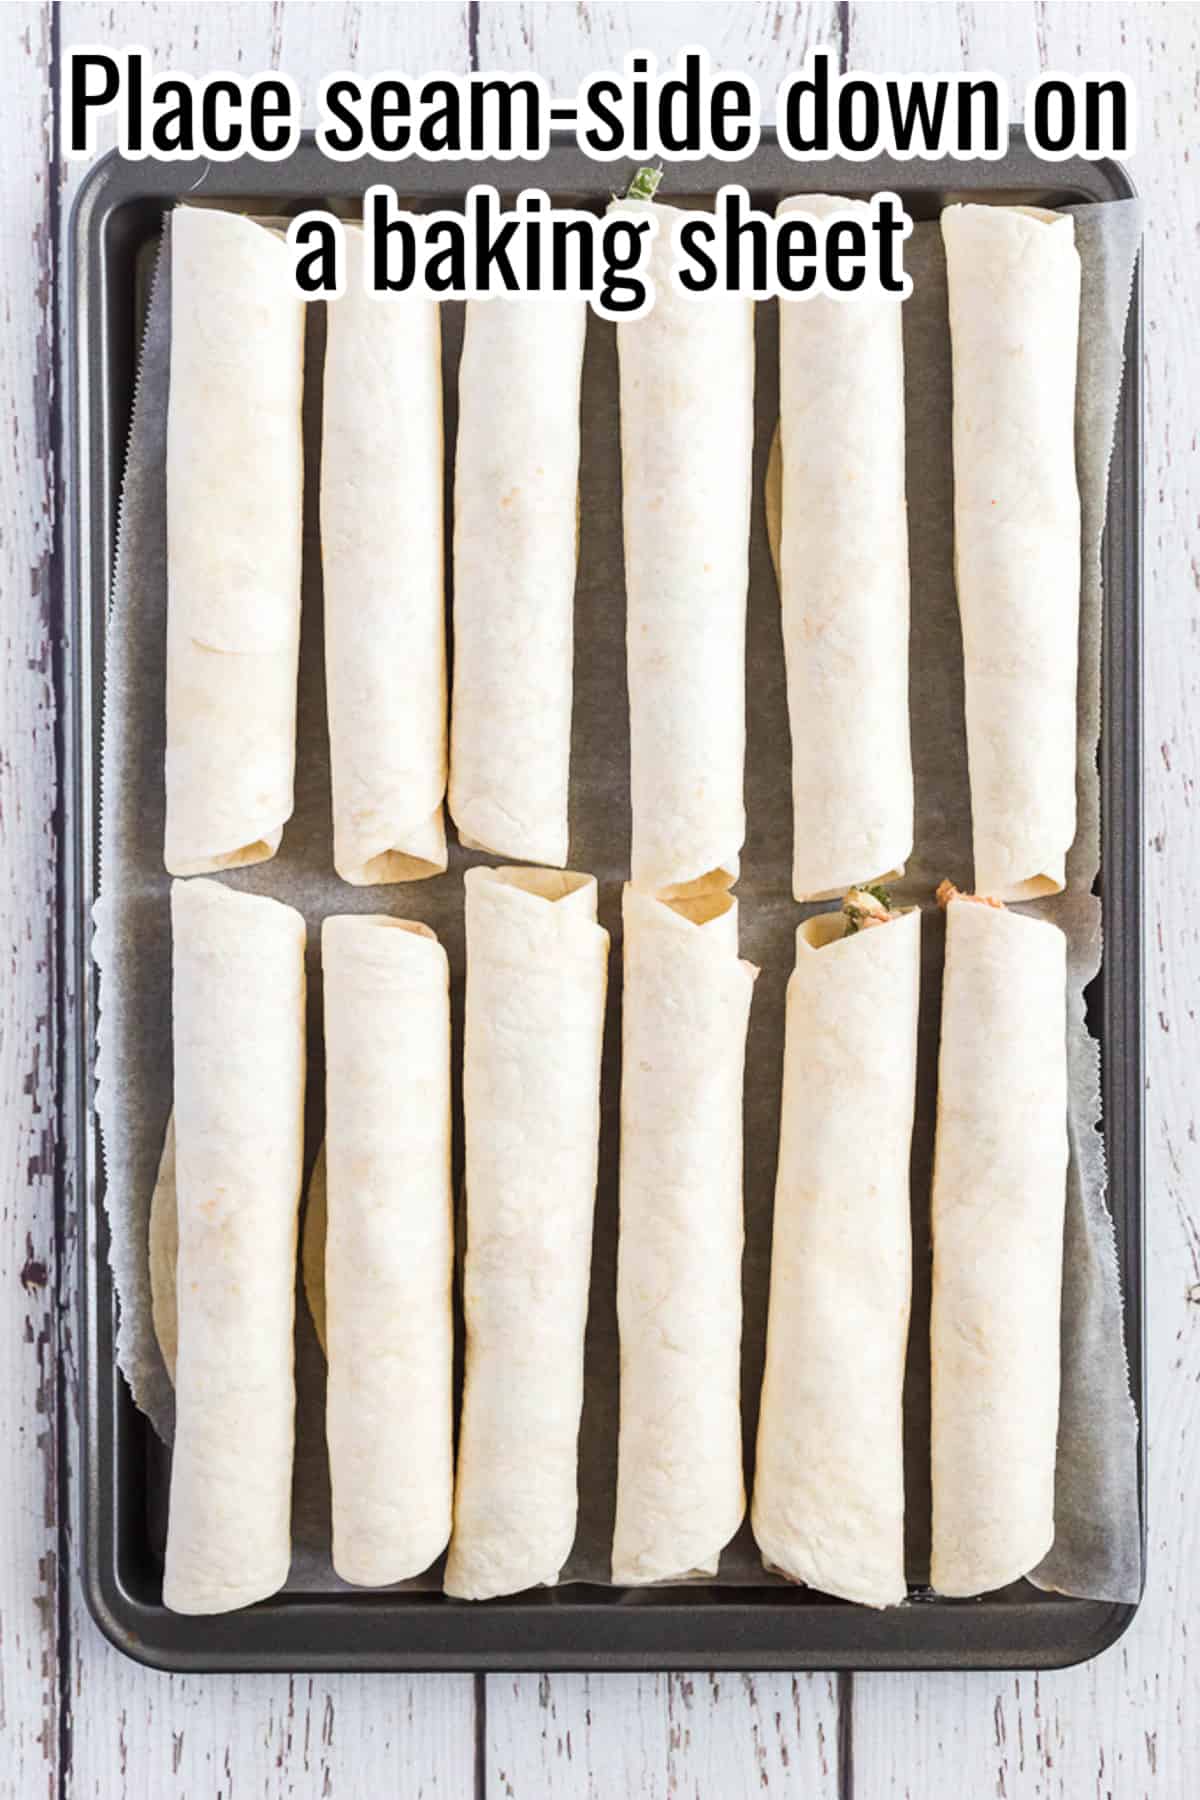 unbaked tortillas on a baking sheet.